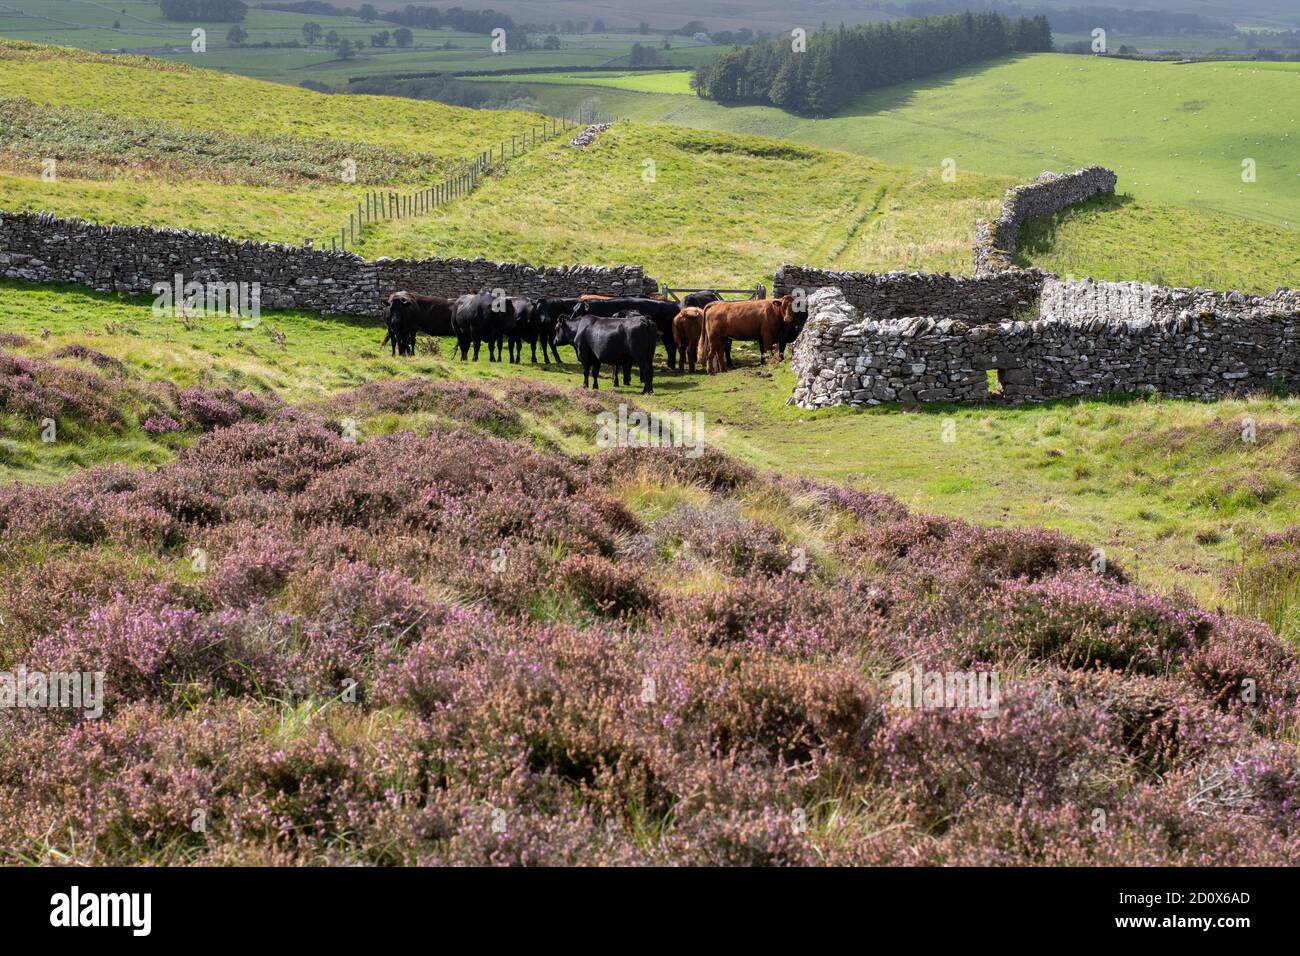 Les vaches dans le champ se sont rassemblées autour d'une porte avec accès à une passerelle utilisée par les marcheurs cyclistes et cavaliers y compris sur la promenade de côte à côte, Cumbria Banque D'Images